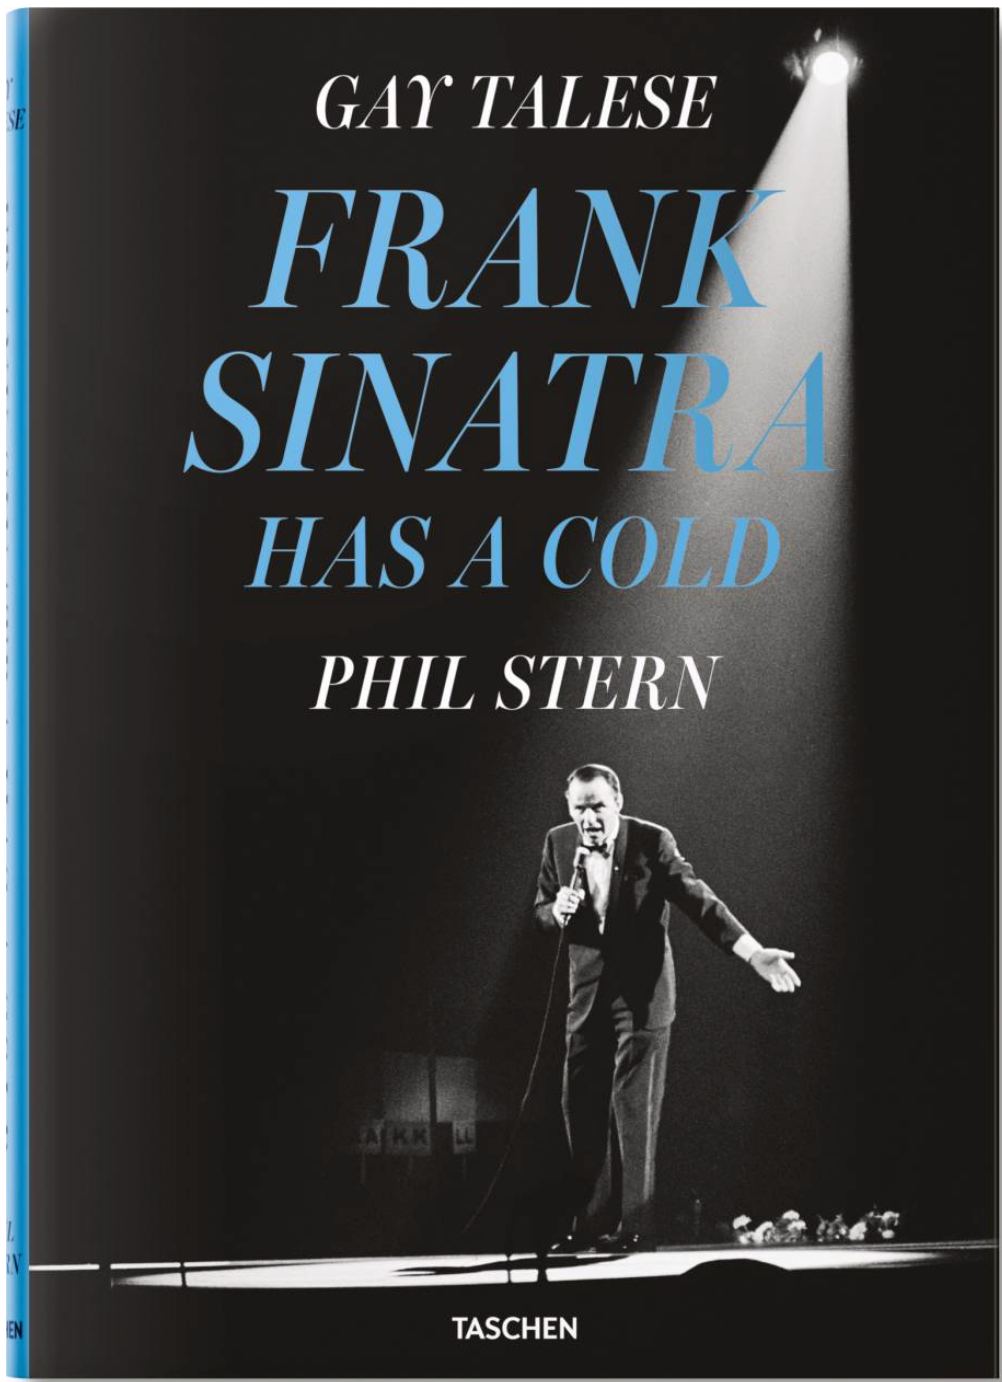 Taschen réédite un article culte sur Frank Sinatra